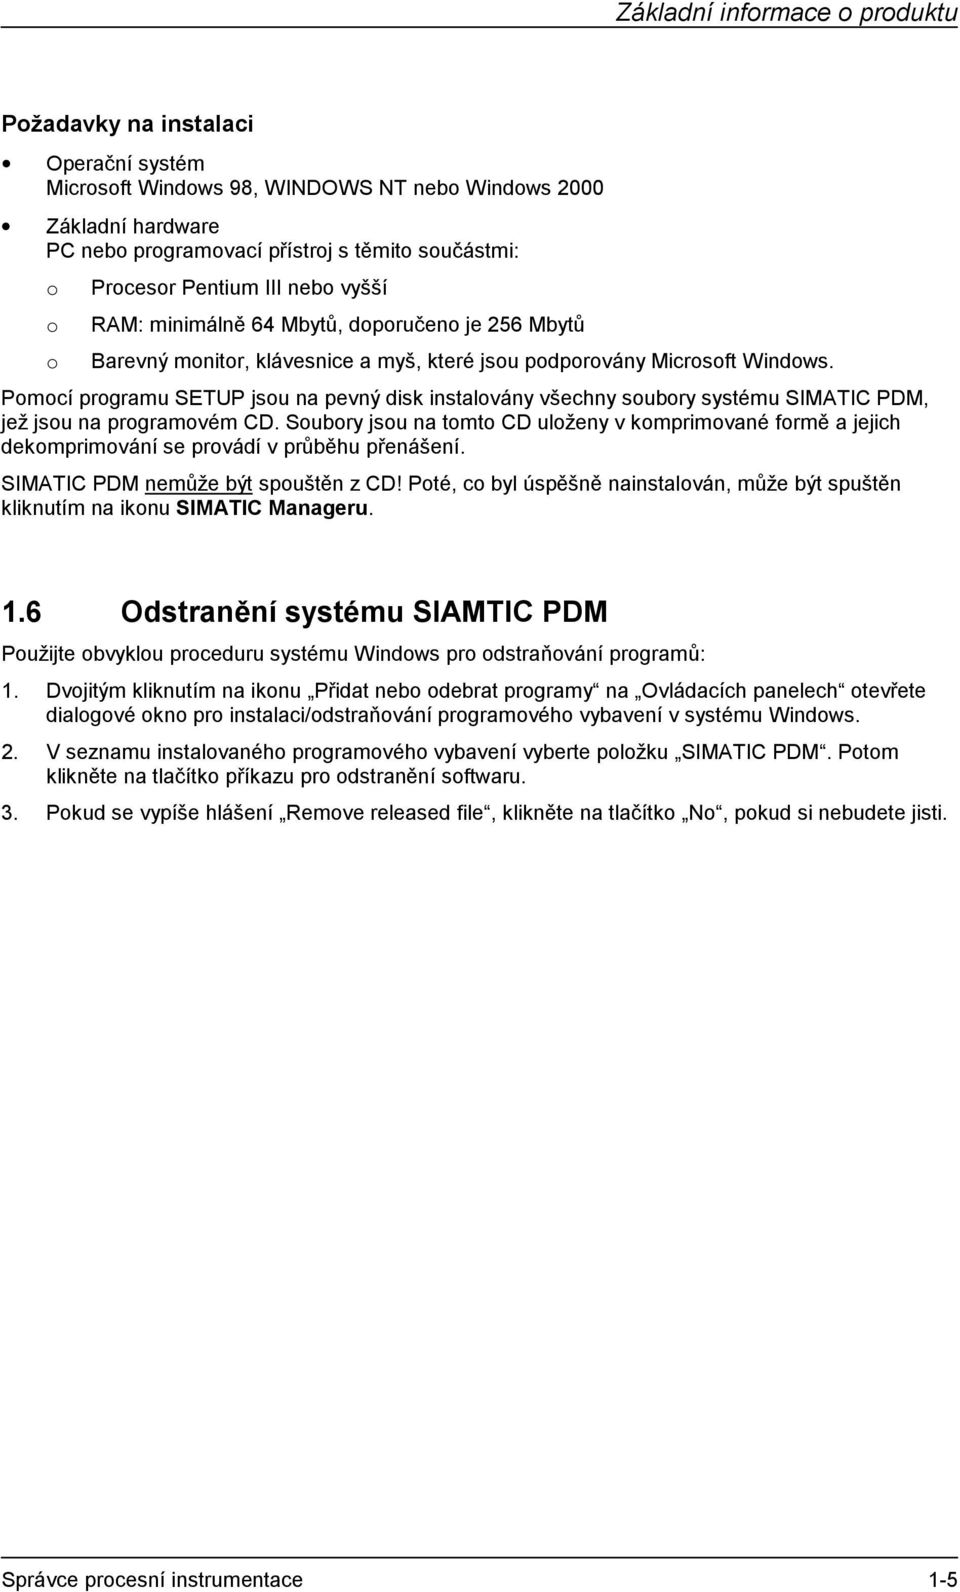 Pomocí programu SETUP jsou na pevný disk instalovány všechny soubory systému SIMATIC PDM, jež jsou na programovém CD.